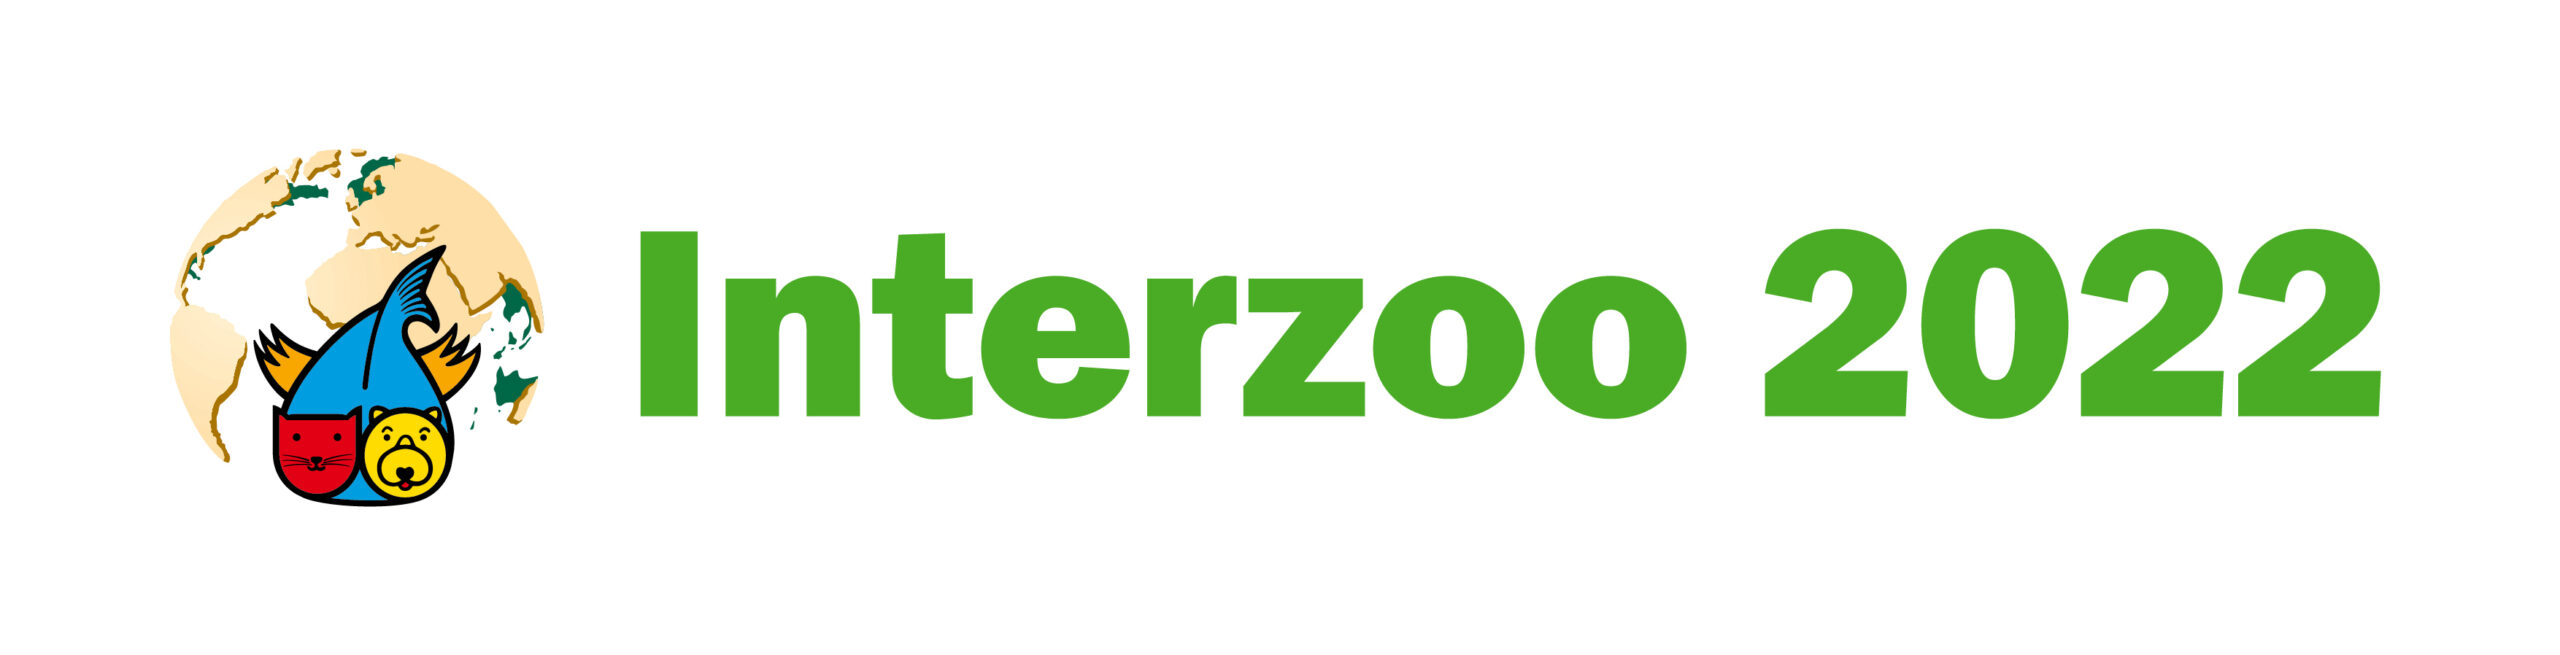 Interzoo 2022徽标